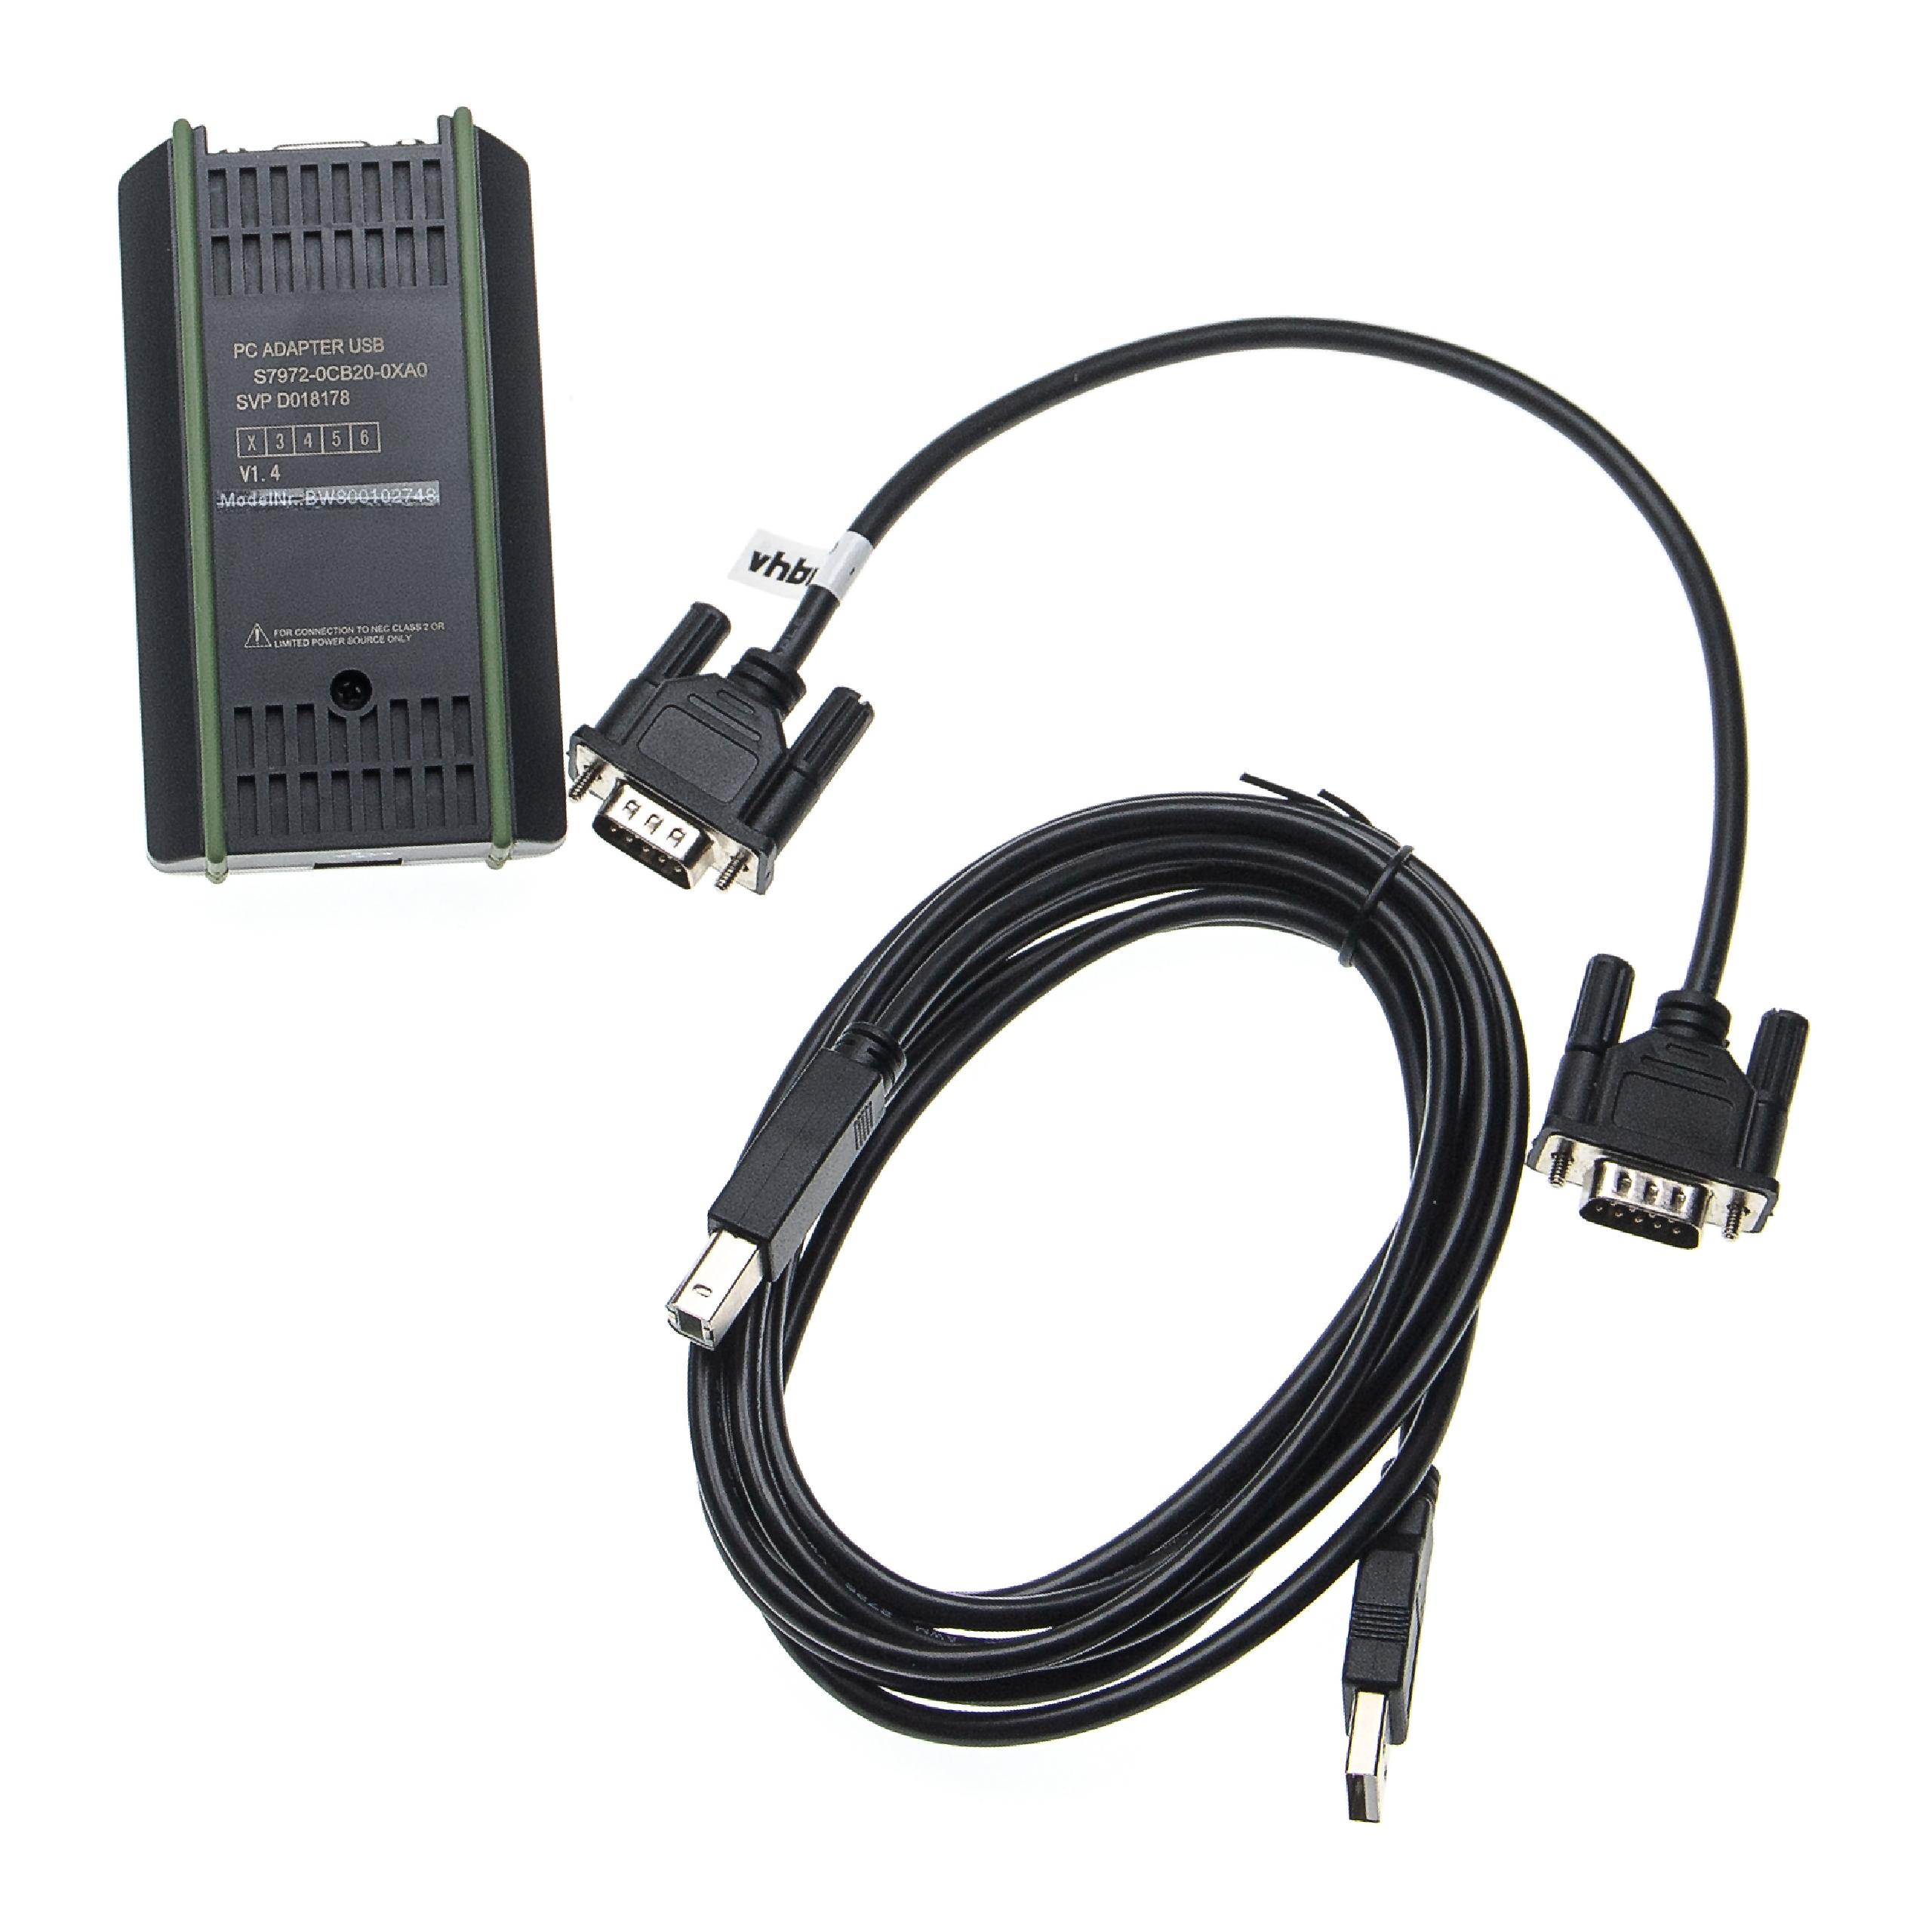 Kabel do programowania PLC, MPI do krótkofalówki zam. Siemens 6ES7 972-0CB20-0XA0